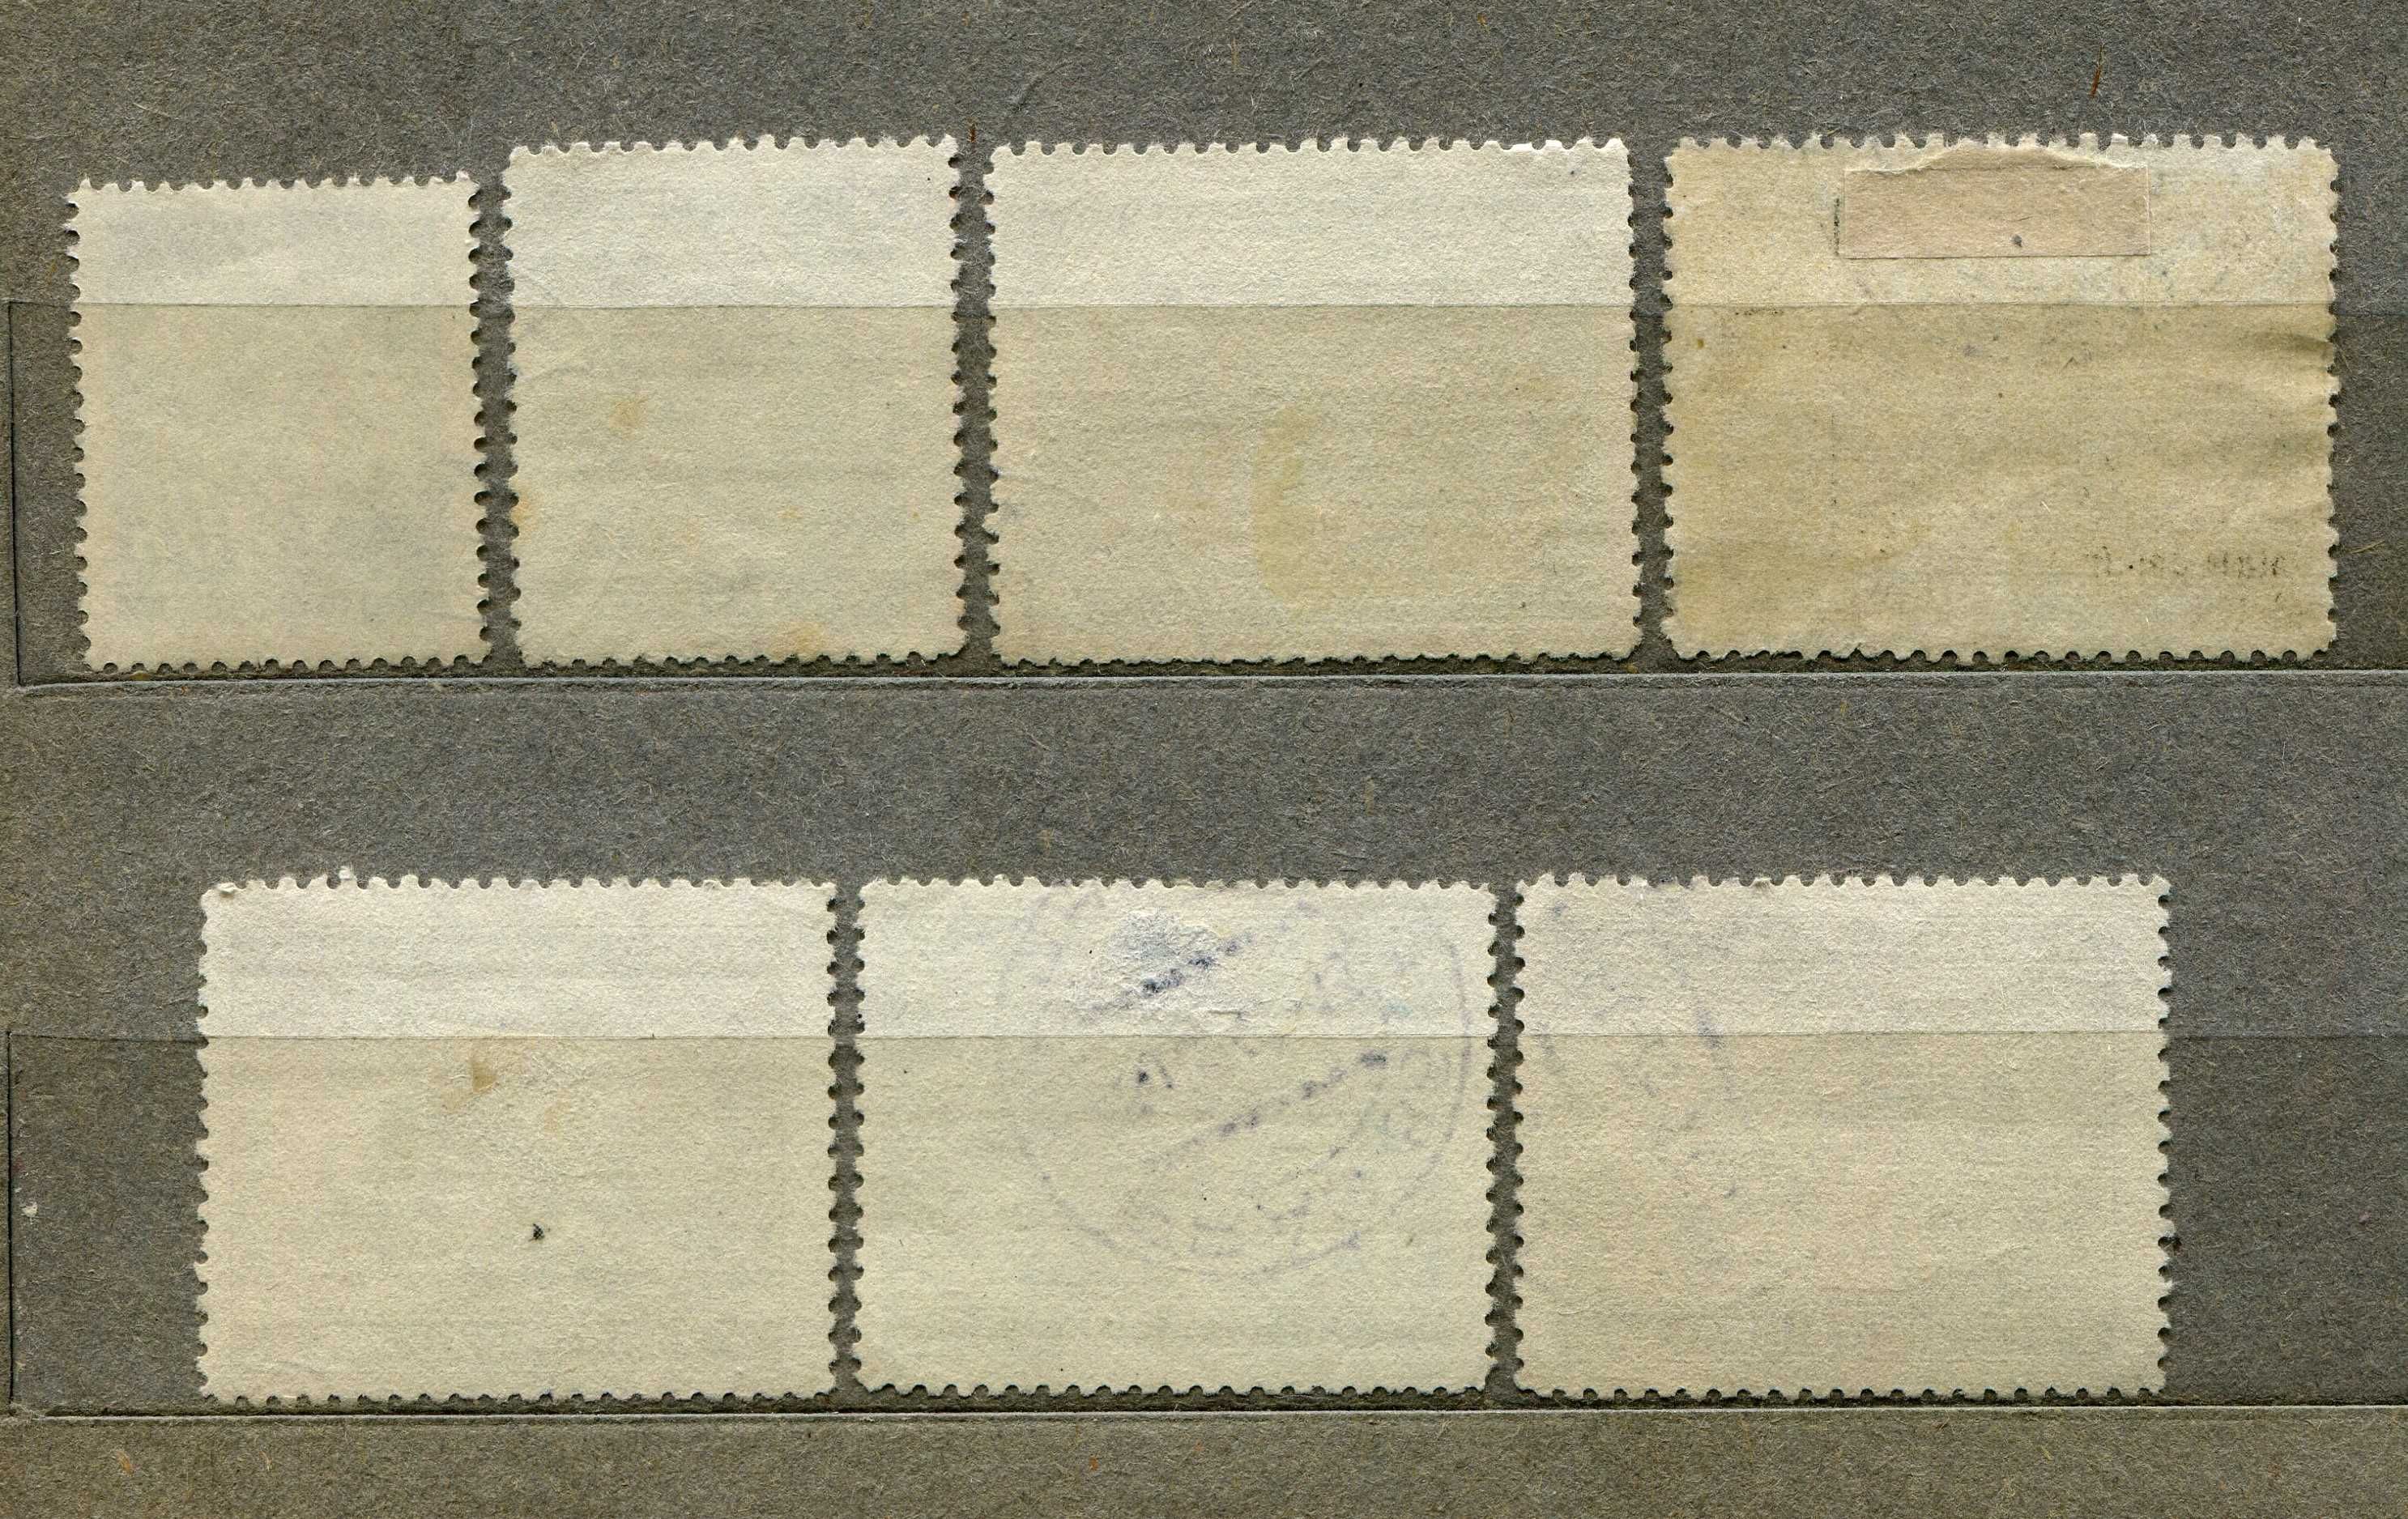 Поштові марки ІІІ рейх, Богемія та Моравія, повна серія, 1940 рік